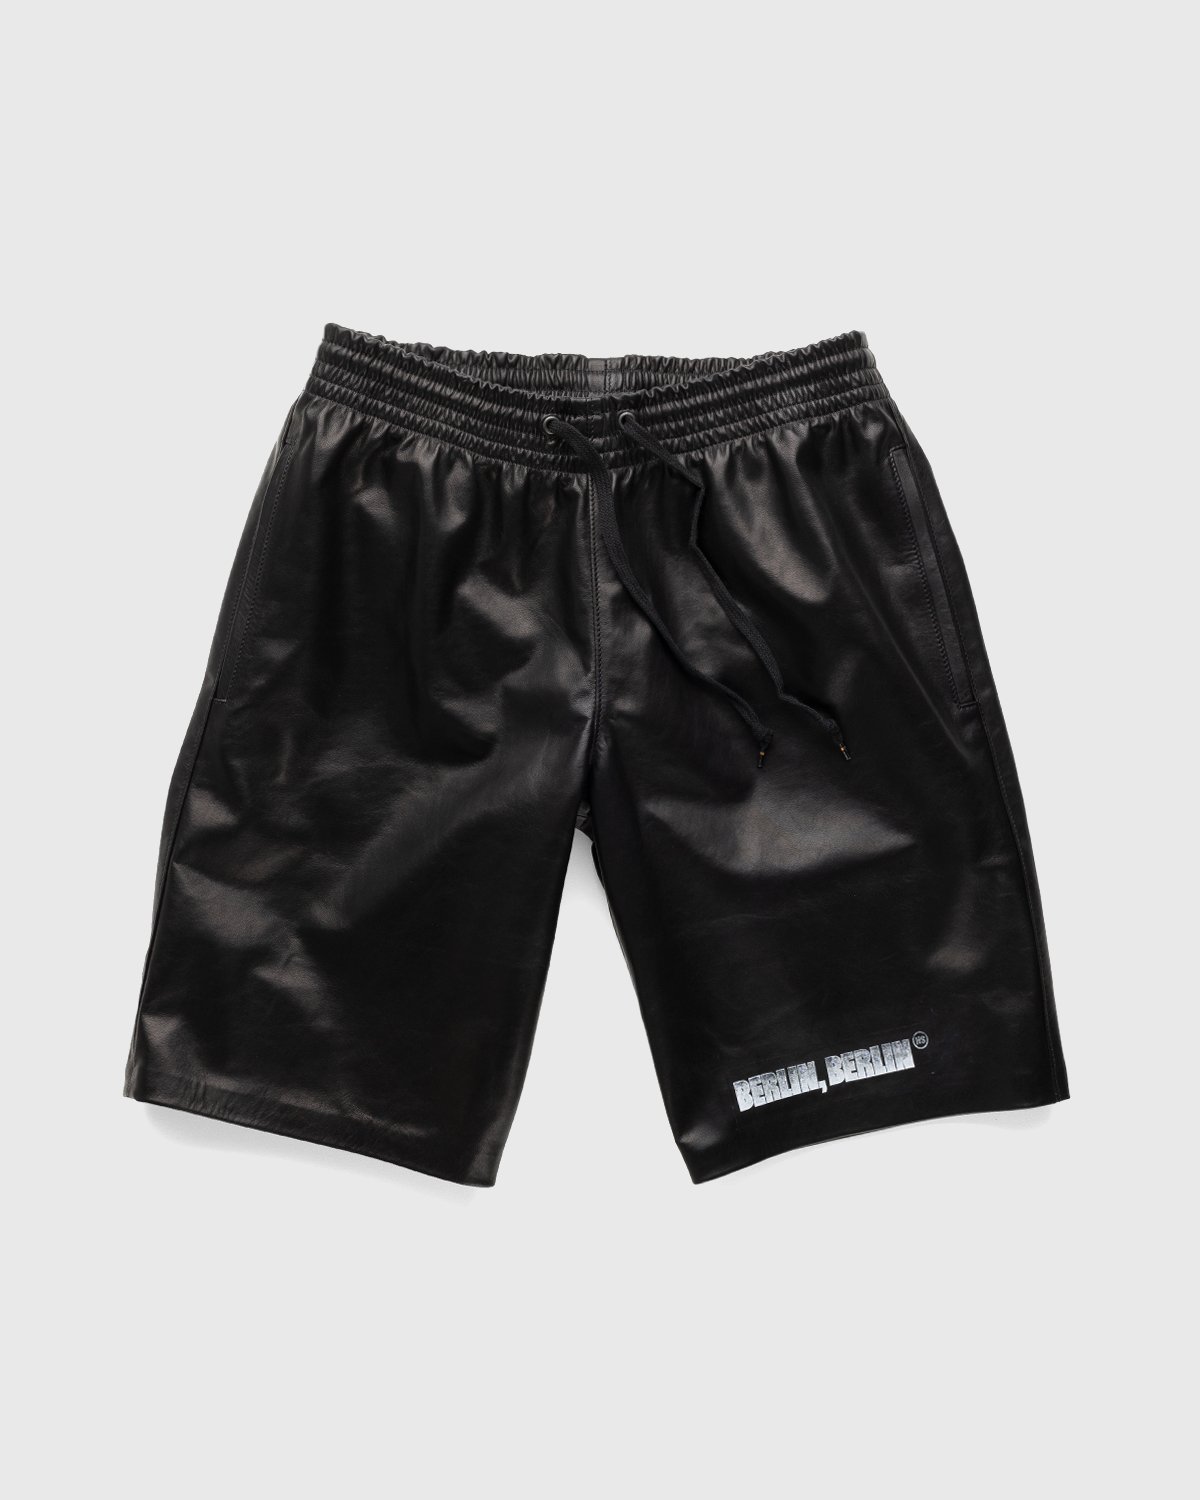 Highsnobiety x Butcherei Lindinger - Shorts Black - Clothing - Black - Image 1